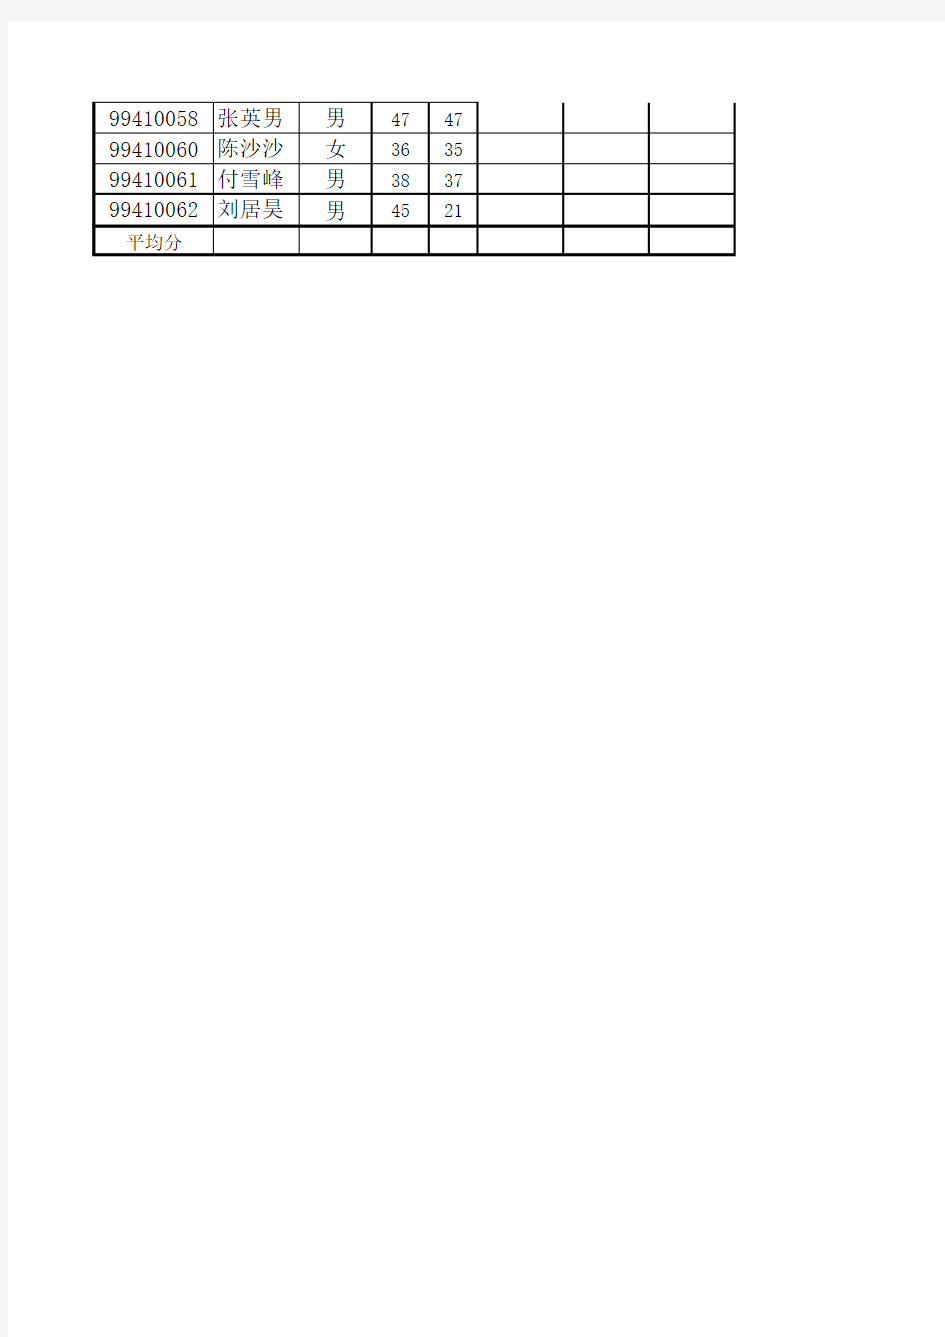 【Excel实验案例】学生成绩表